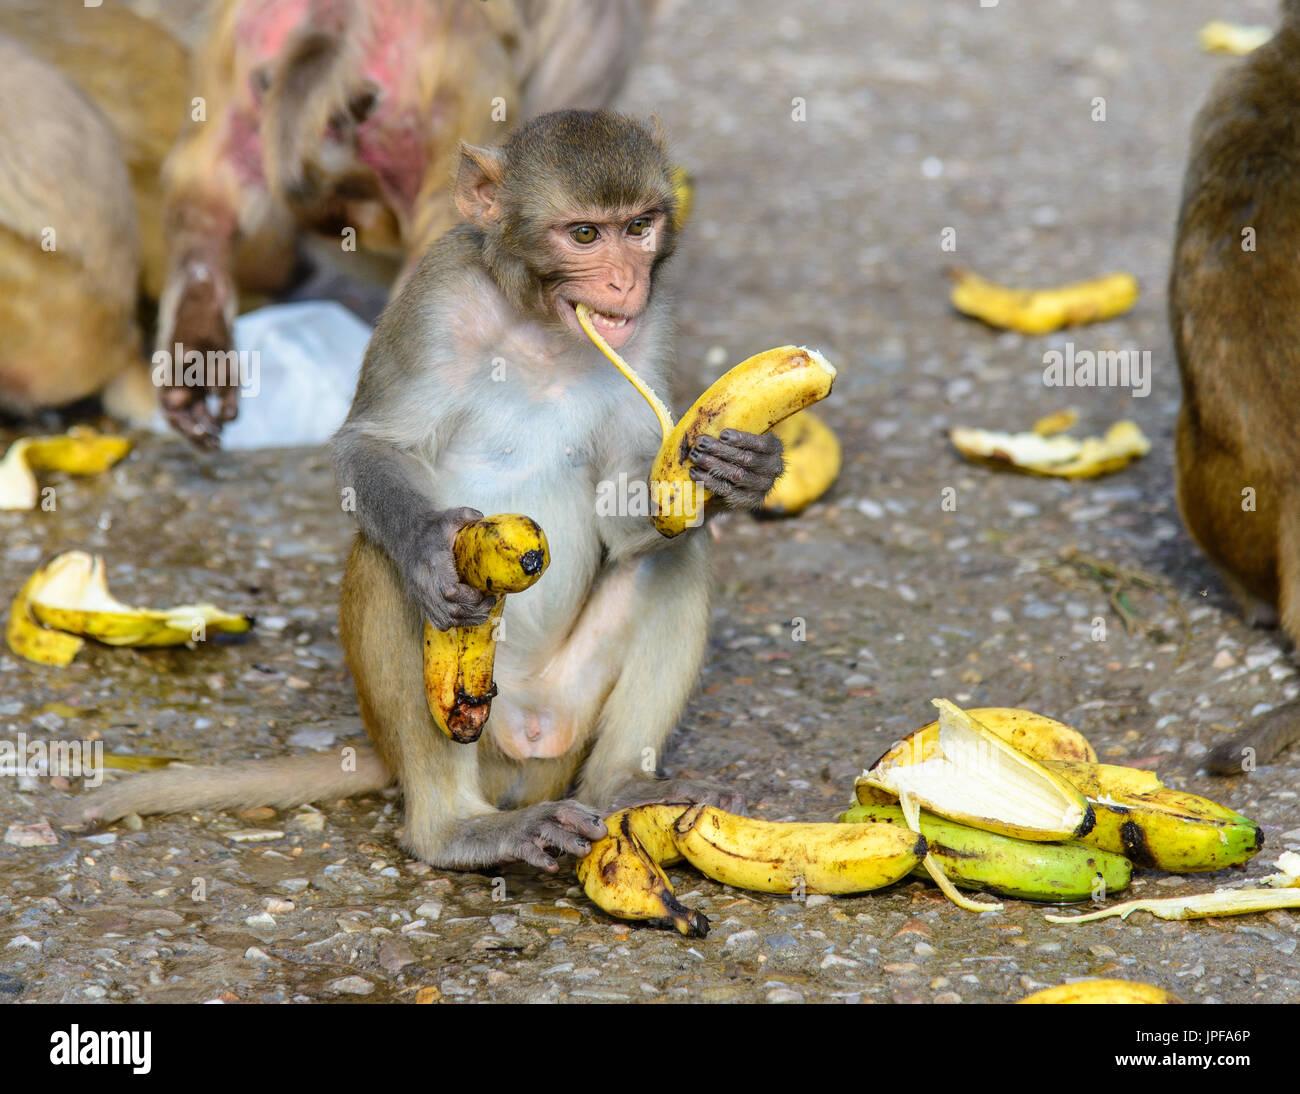 Monkeys eating bananas, Monkey Temple of Jaipur, India Stock Photo